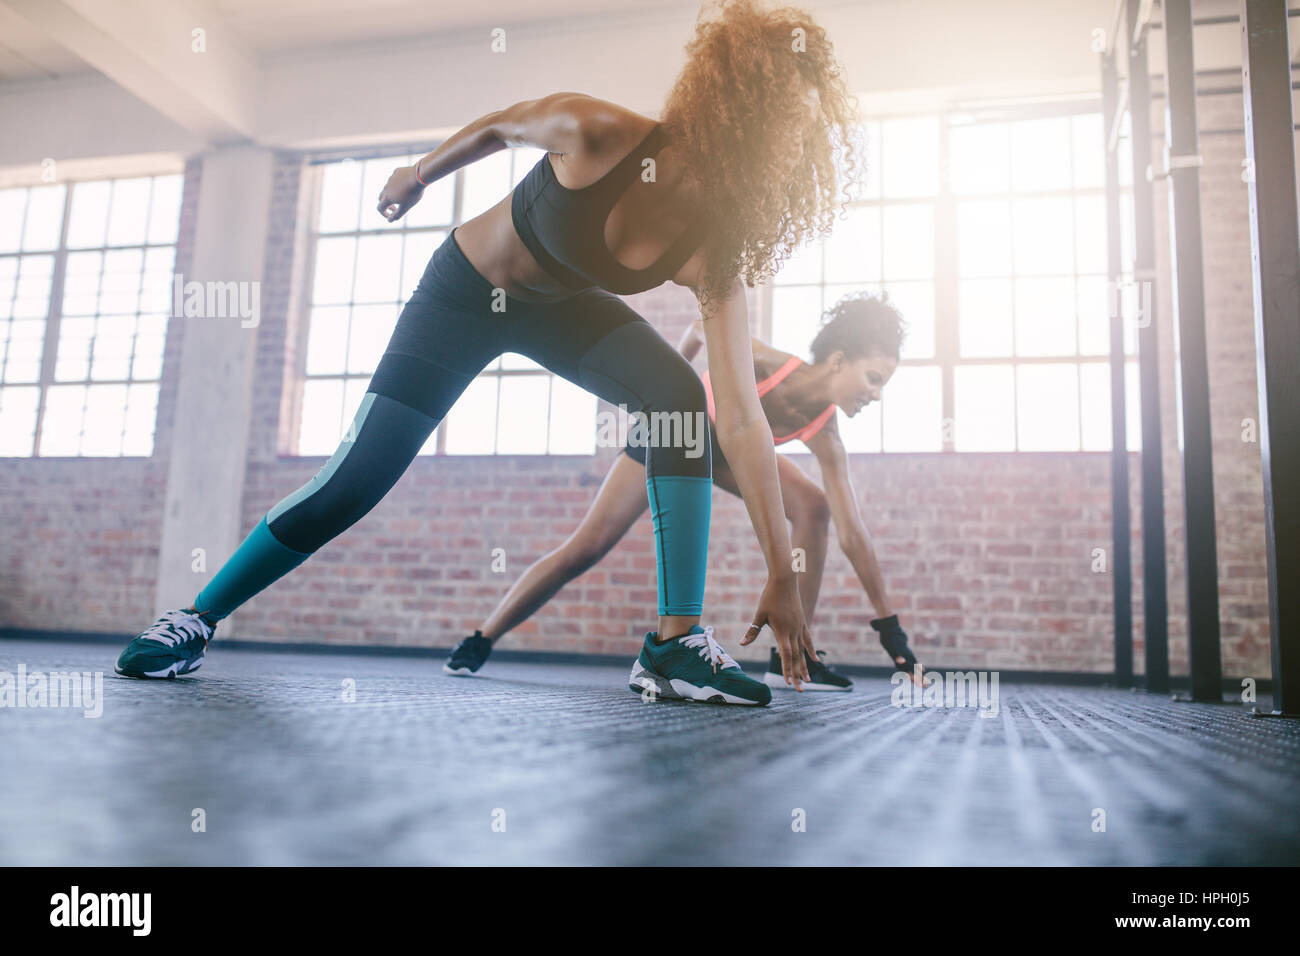 Aufnahme von jungen Frauen in der Turnhalle ausgeführt. Frauen Fitness-Workout im Fitnessraum. Stockfoto